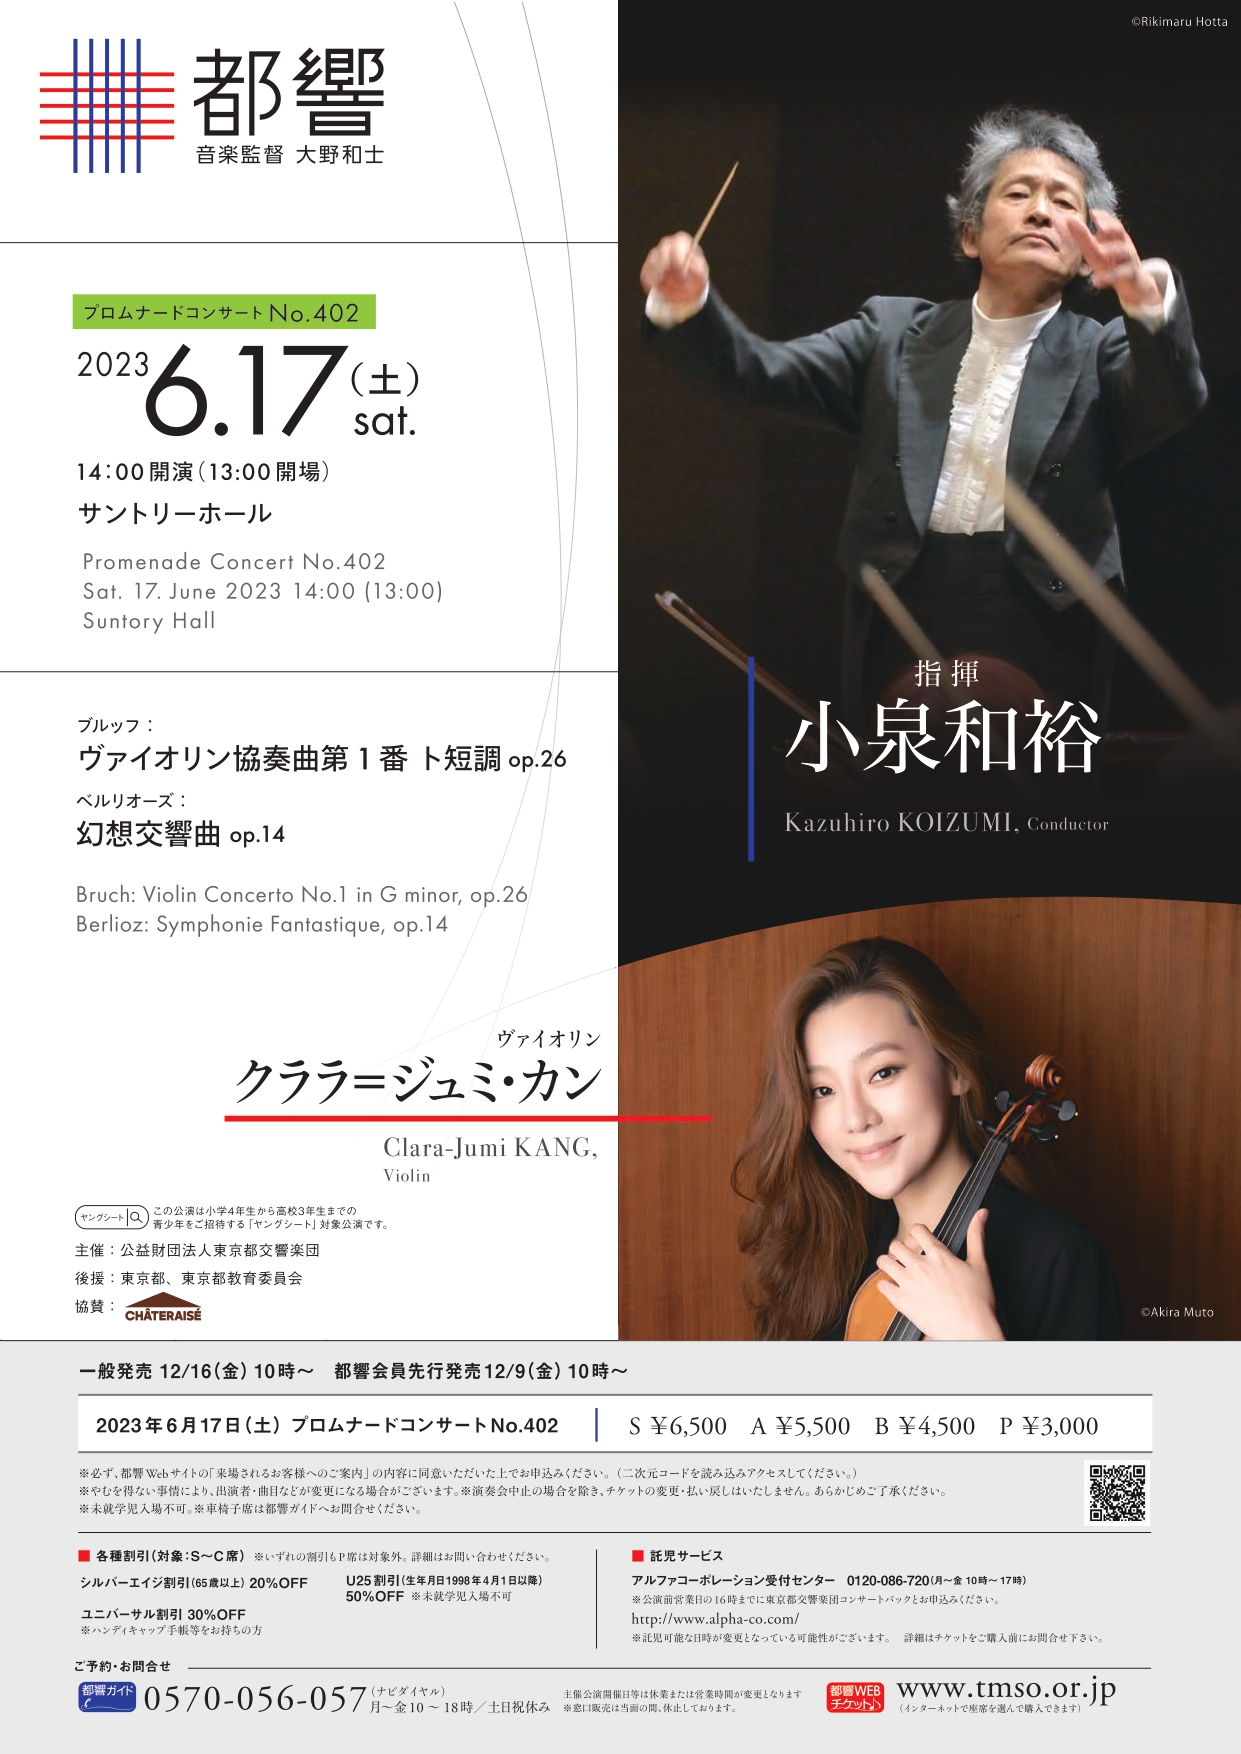 東京都交響楽団プロムナードコンサートNo.402のフライヤー画像